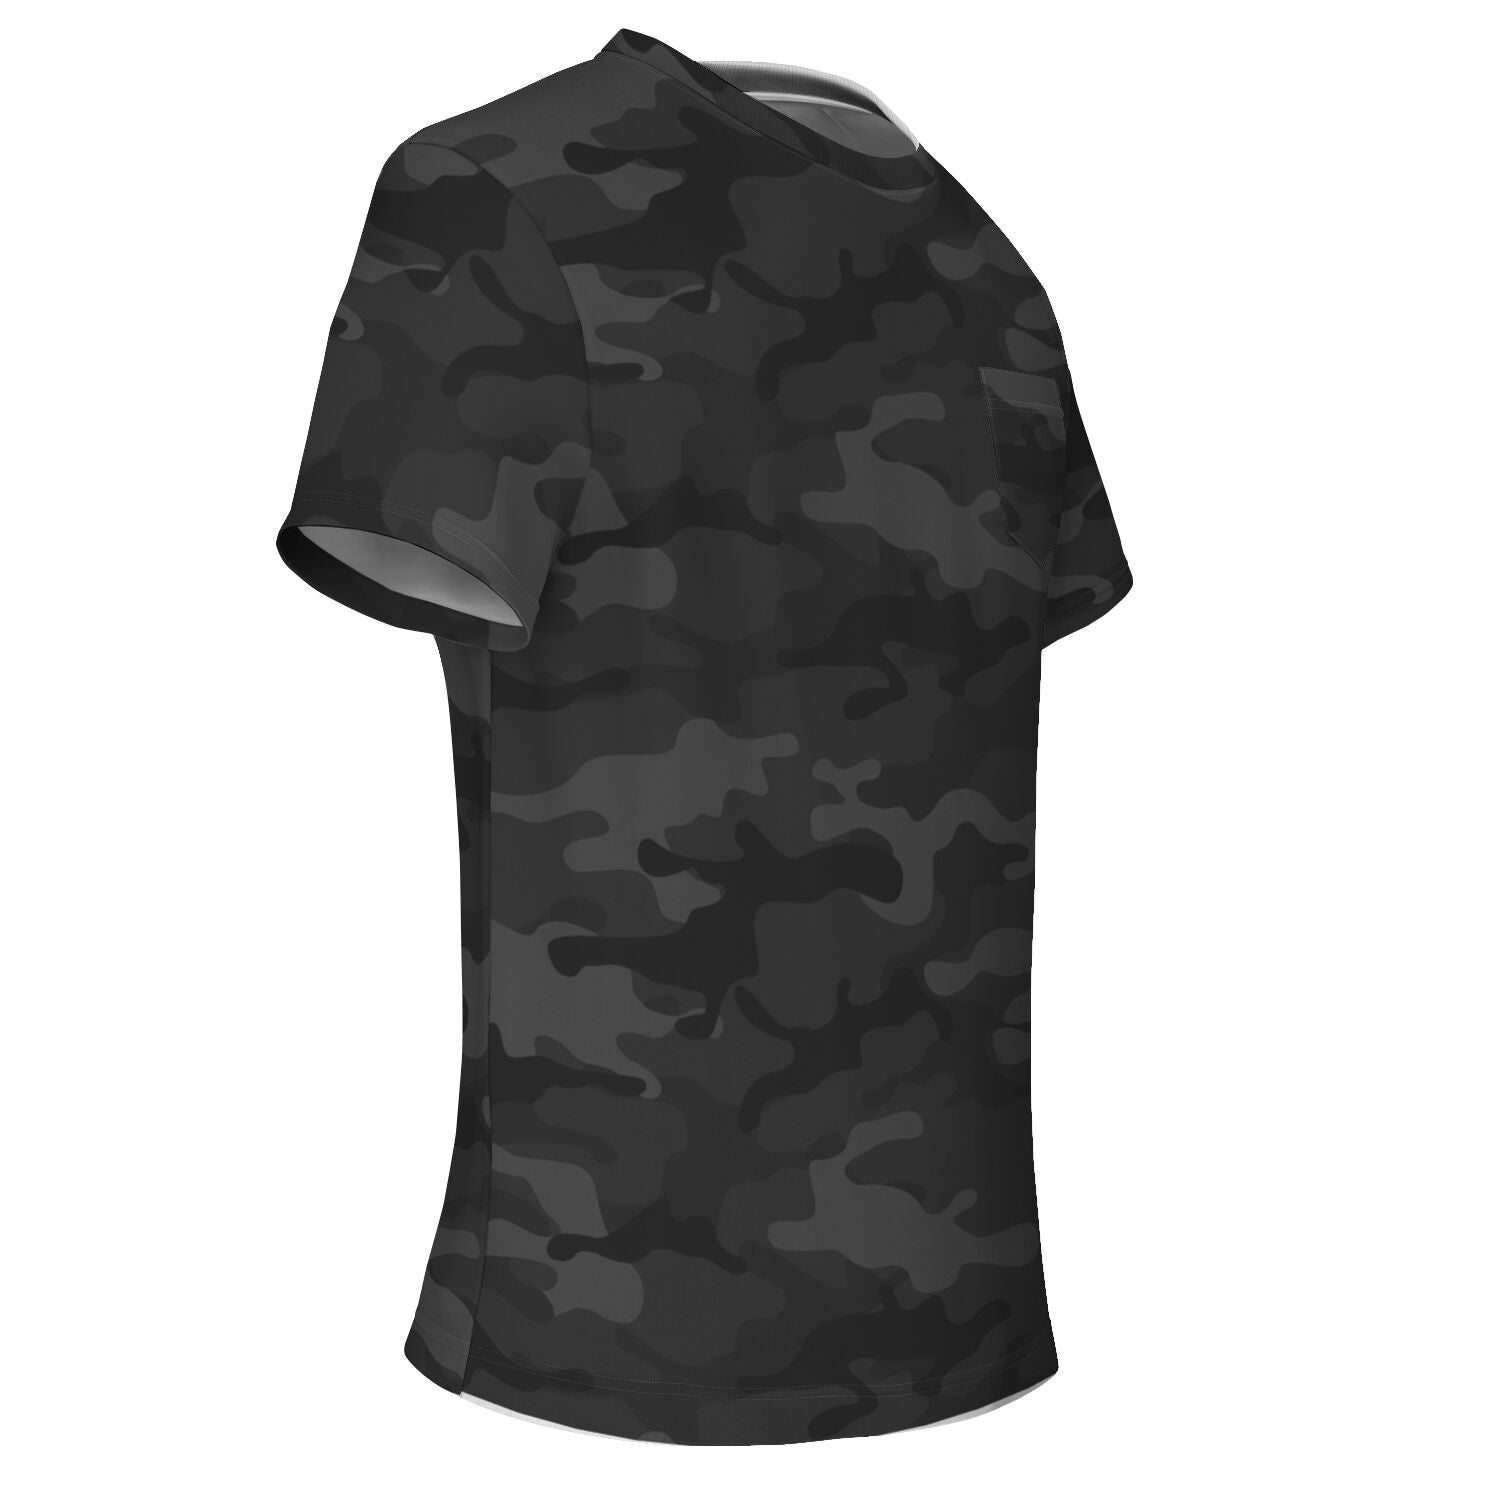 Custom Code V REALTREE AP Camo Shirt - Design Online